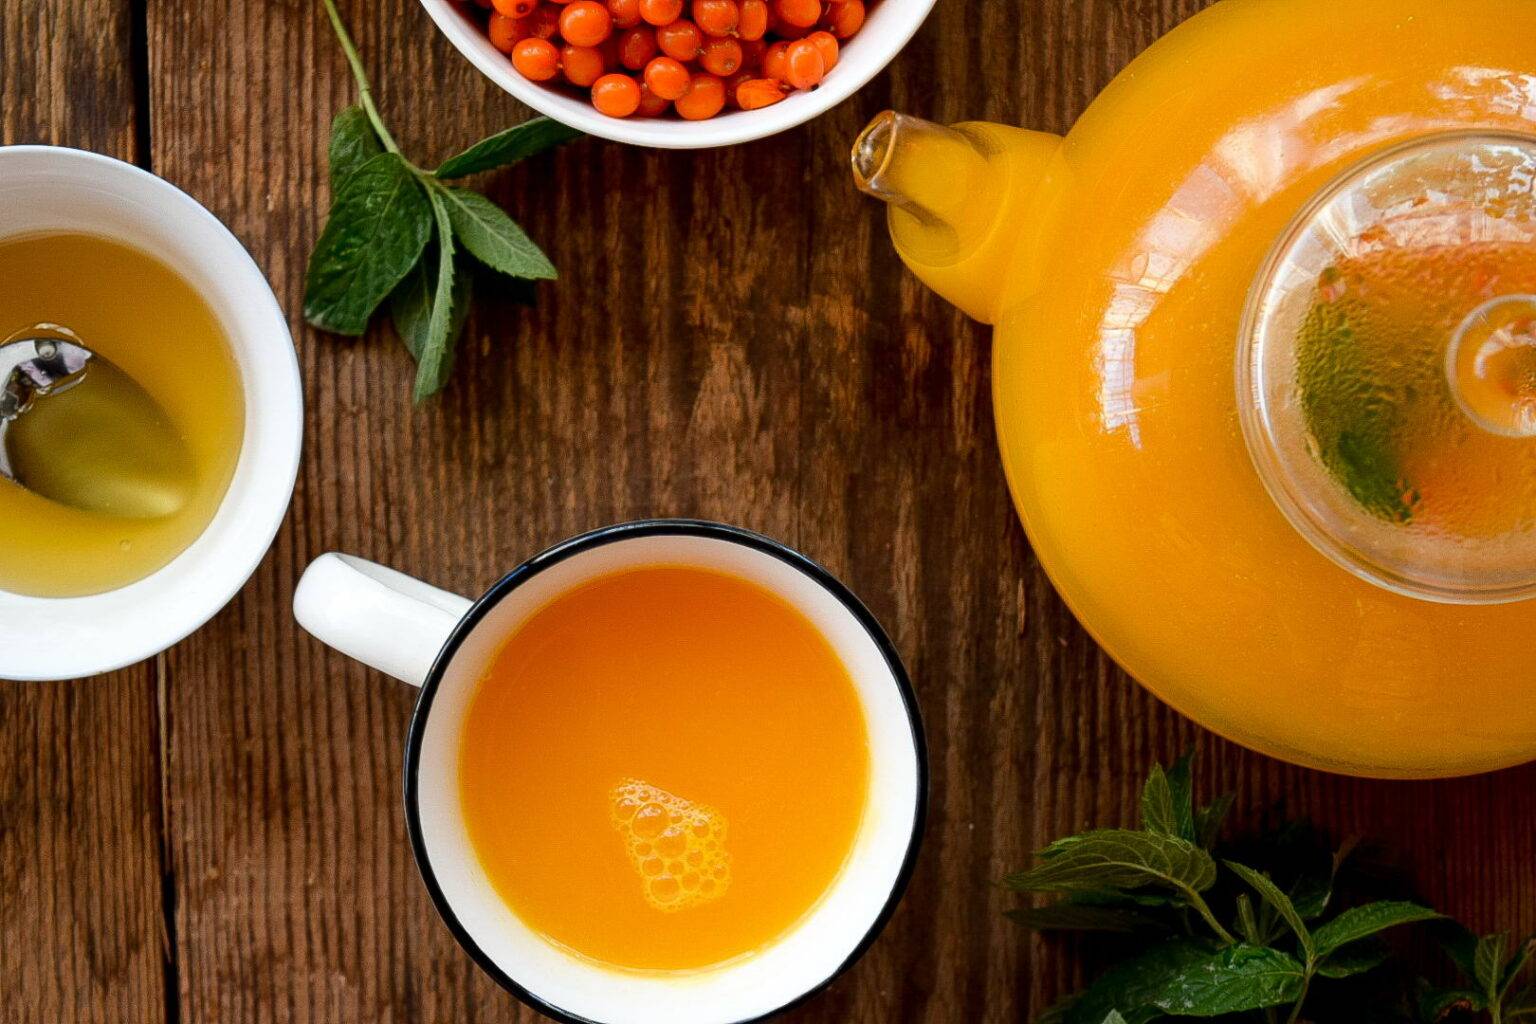 7 секретов заварки вкусного чая из облепихи с пользой для здоровья